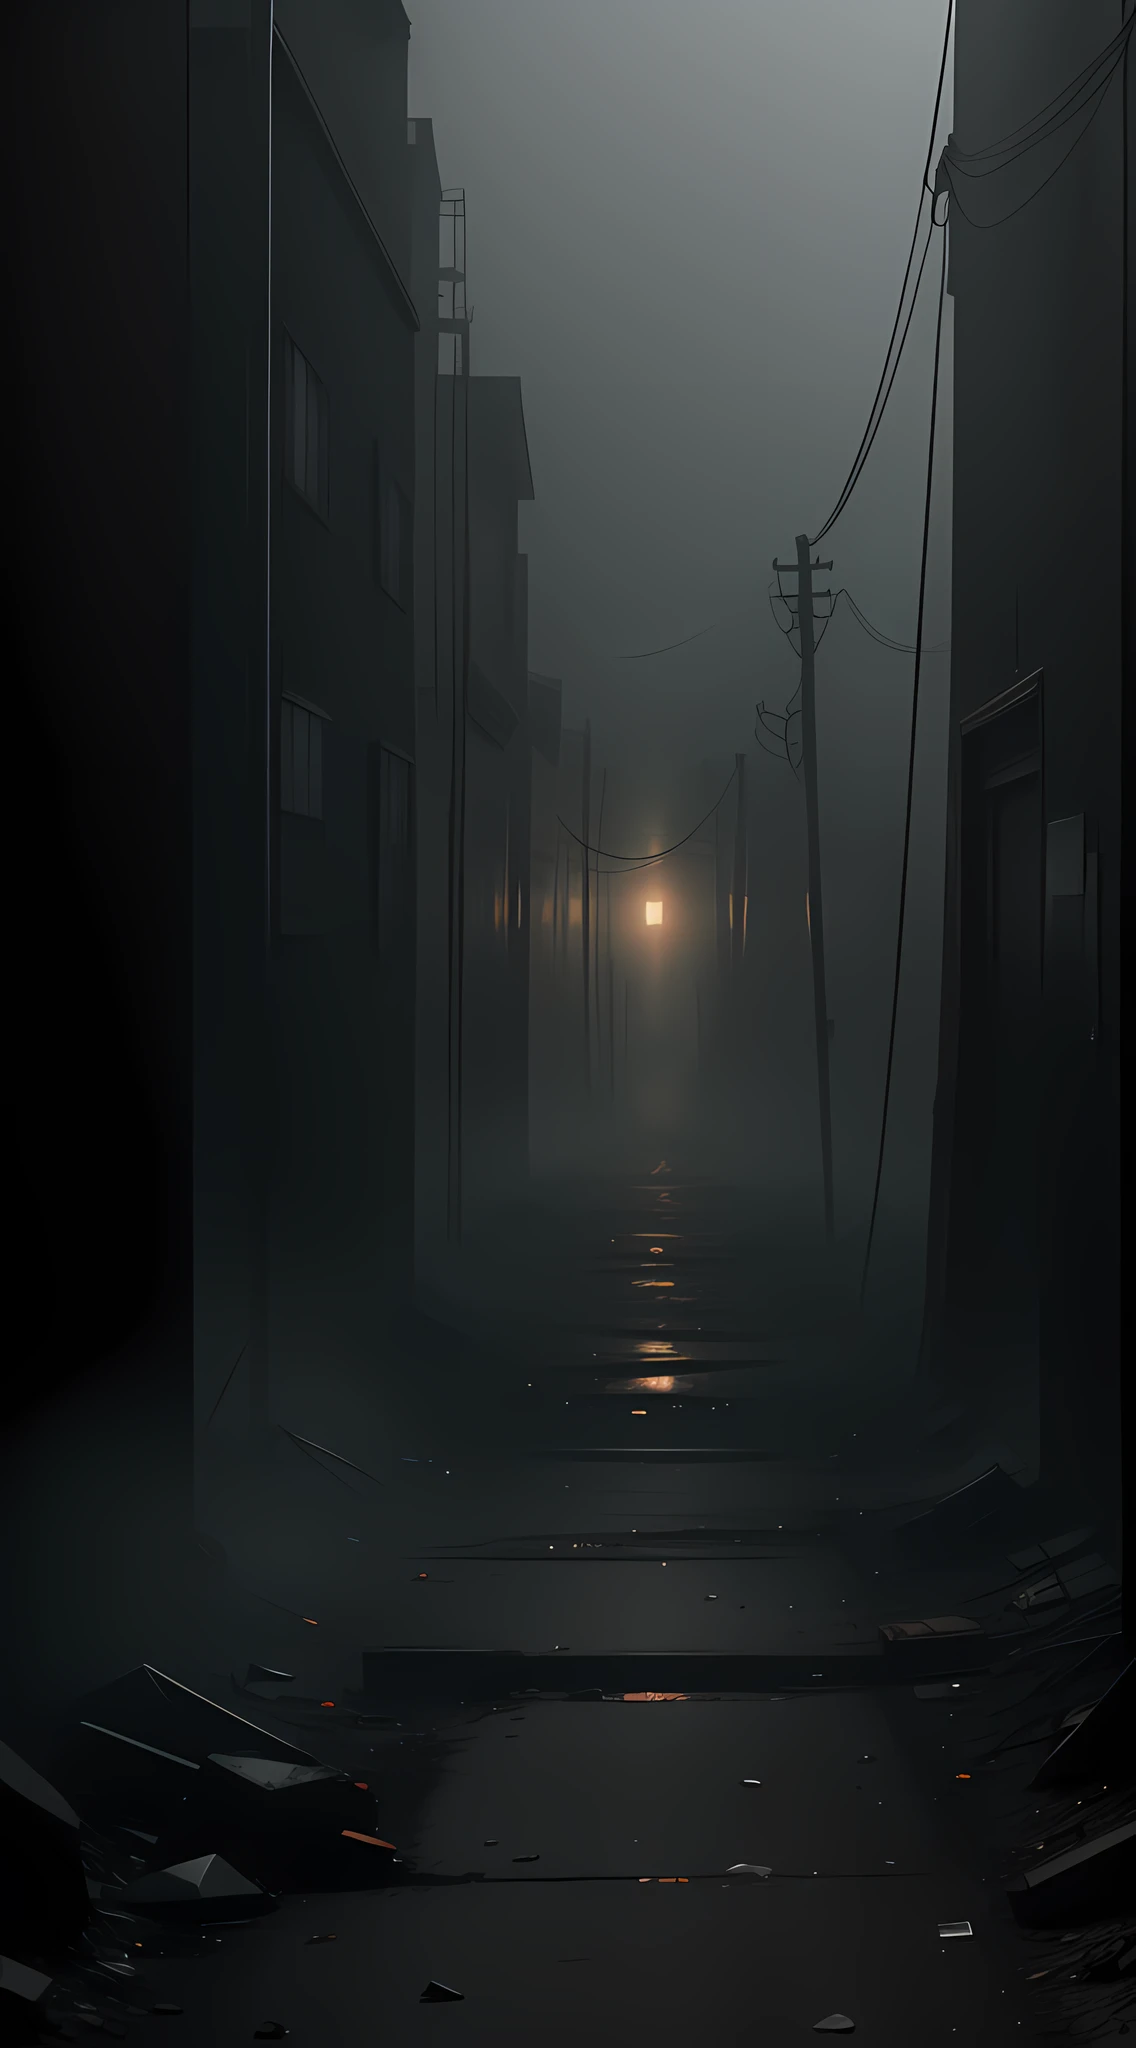 Genera una fotografía profesional en 8K que capture la esencia inquietante de Silent Hill en Centralia. Agregue una niebla densa y elementos de óxido y descomposición para crear una atmósfera opresiva. Usa ángulos de cámara distorsionados y encuadres inusuales para transmitir la sensación de desorientación y terror característica del universo de Silent Hill.